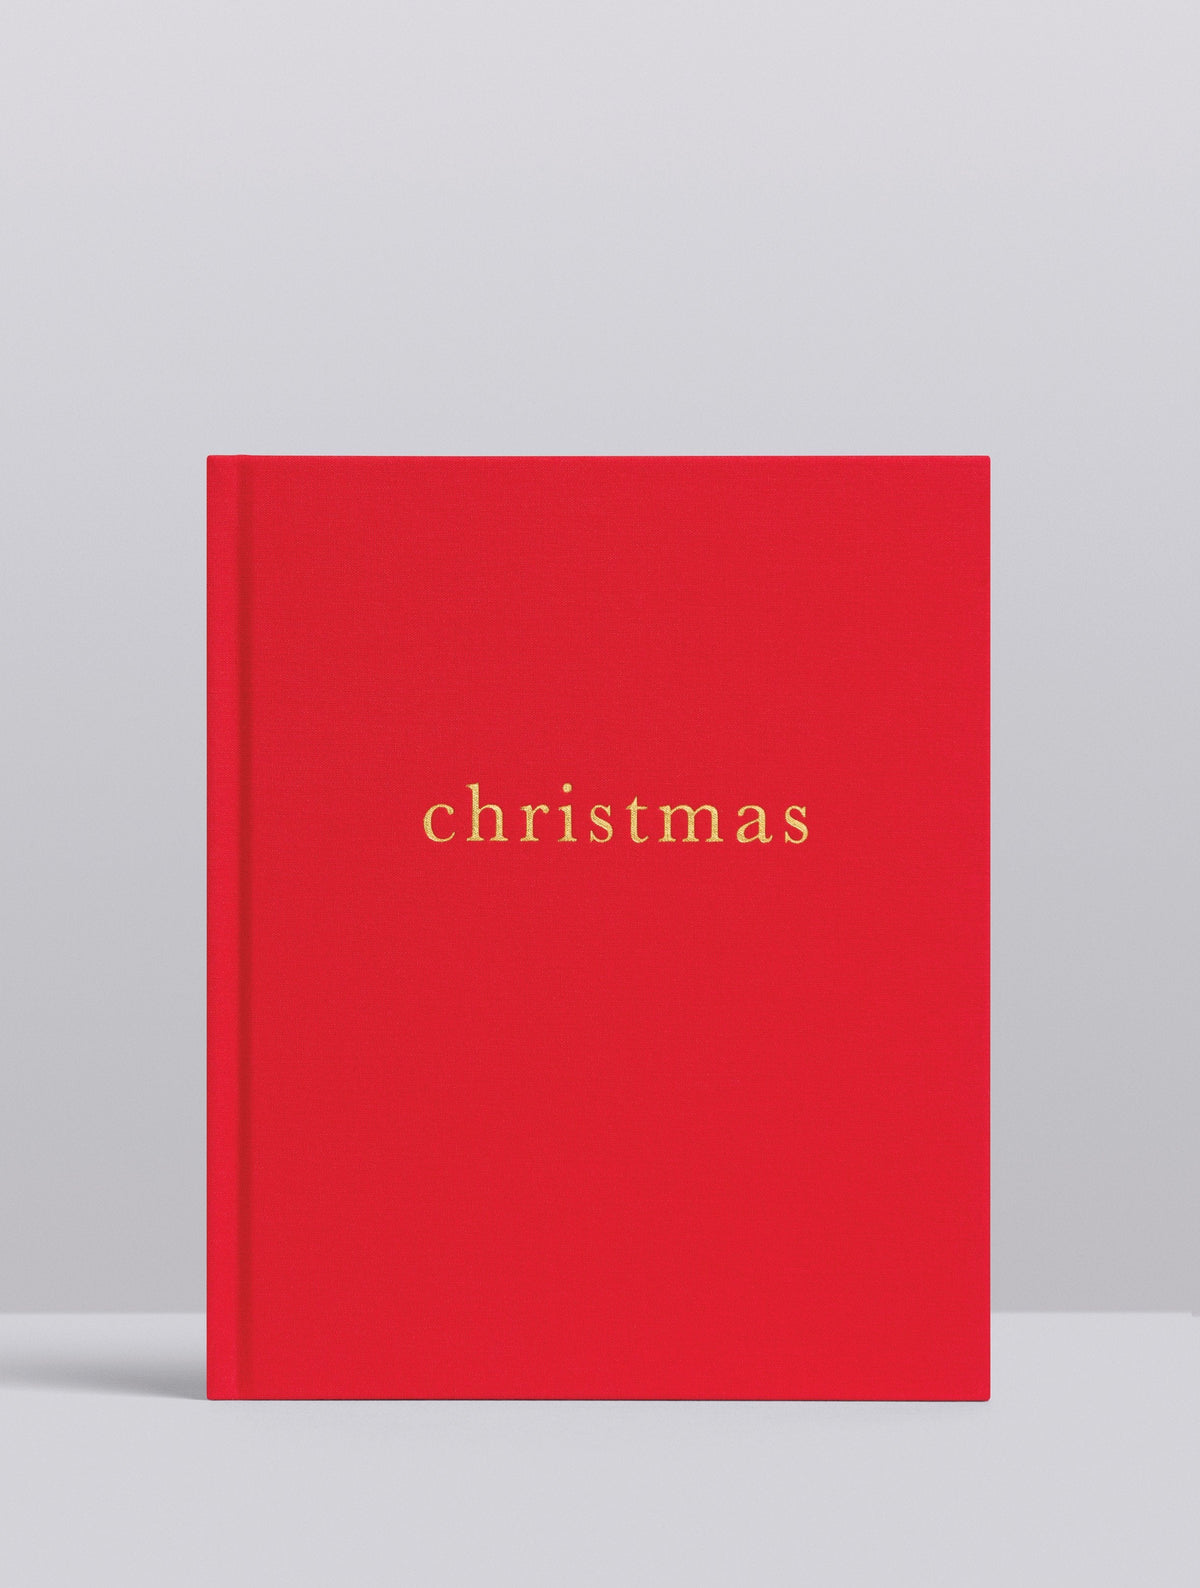 Christmas. Family Christmas Book. Red